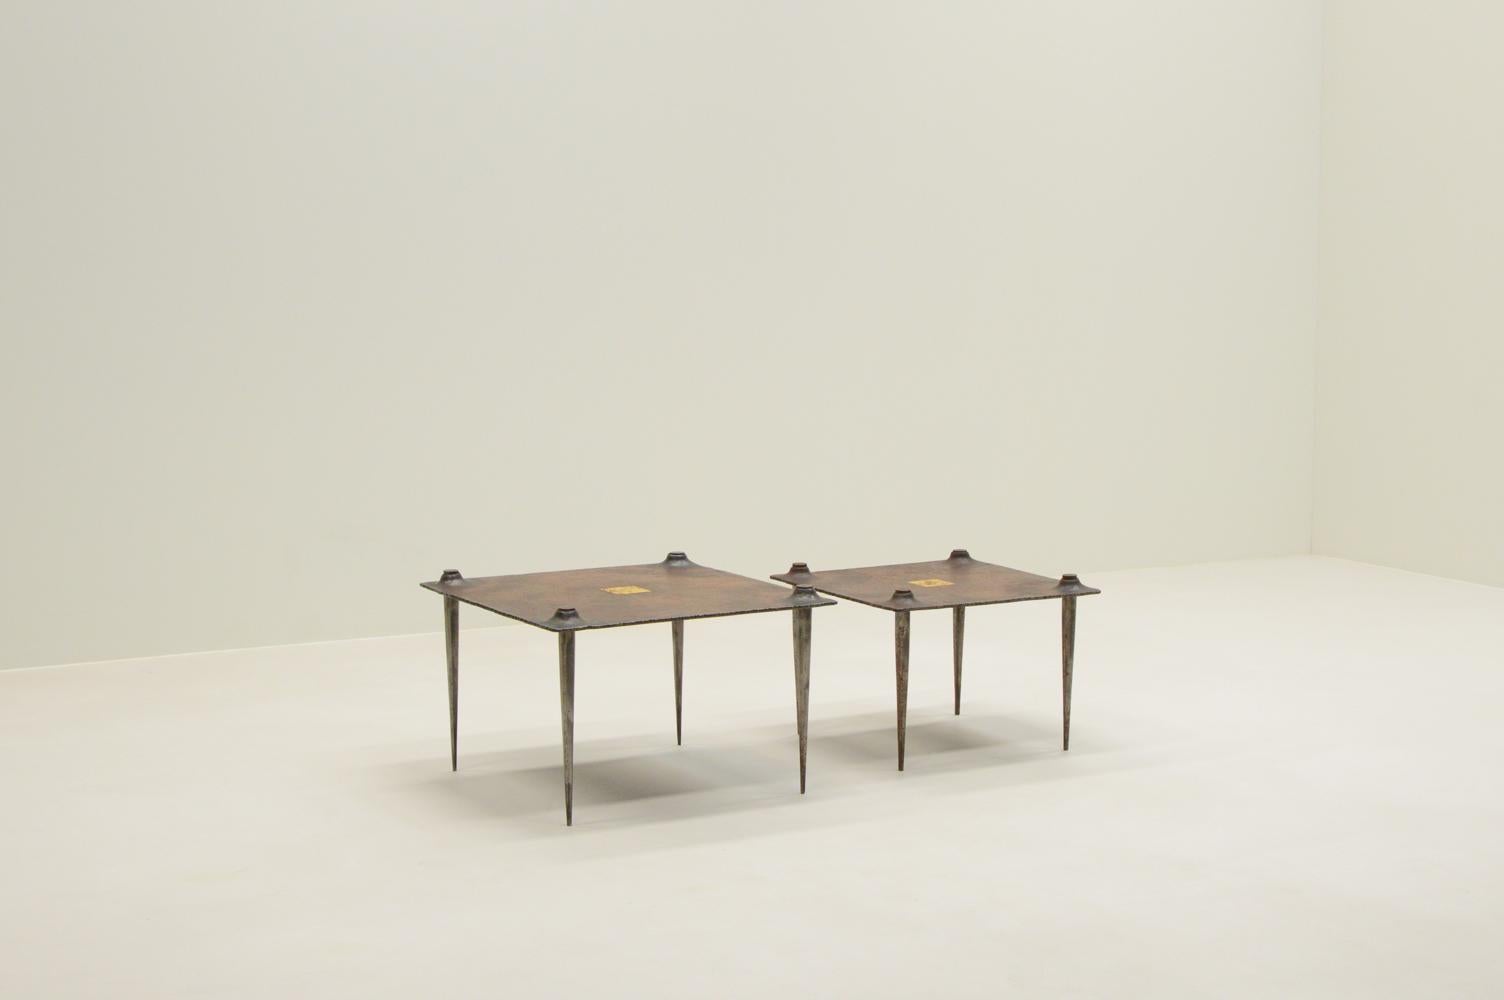 Brutalistische Beistell- und Couchtische von Idir Mecibah für Smederij Moerman, 1990er Jahre Belgien. Diese Tische sind Teil der Scrab-Serie. Hergestellt aus geschmiedetem Stahl. In der Mitte befindet sich ein Quadrat aus Blattgold. Idir starb in